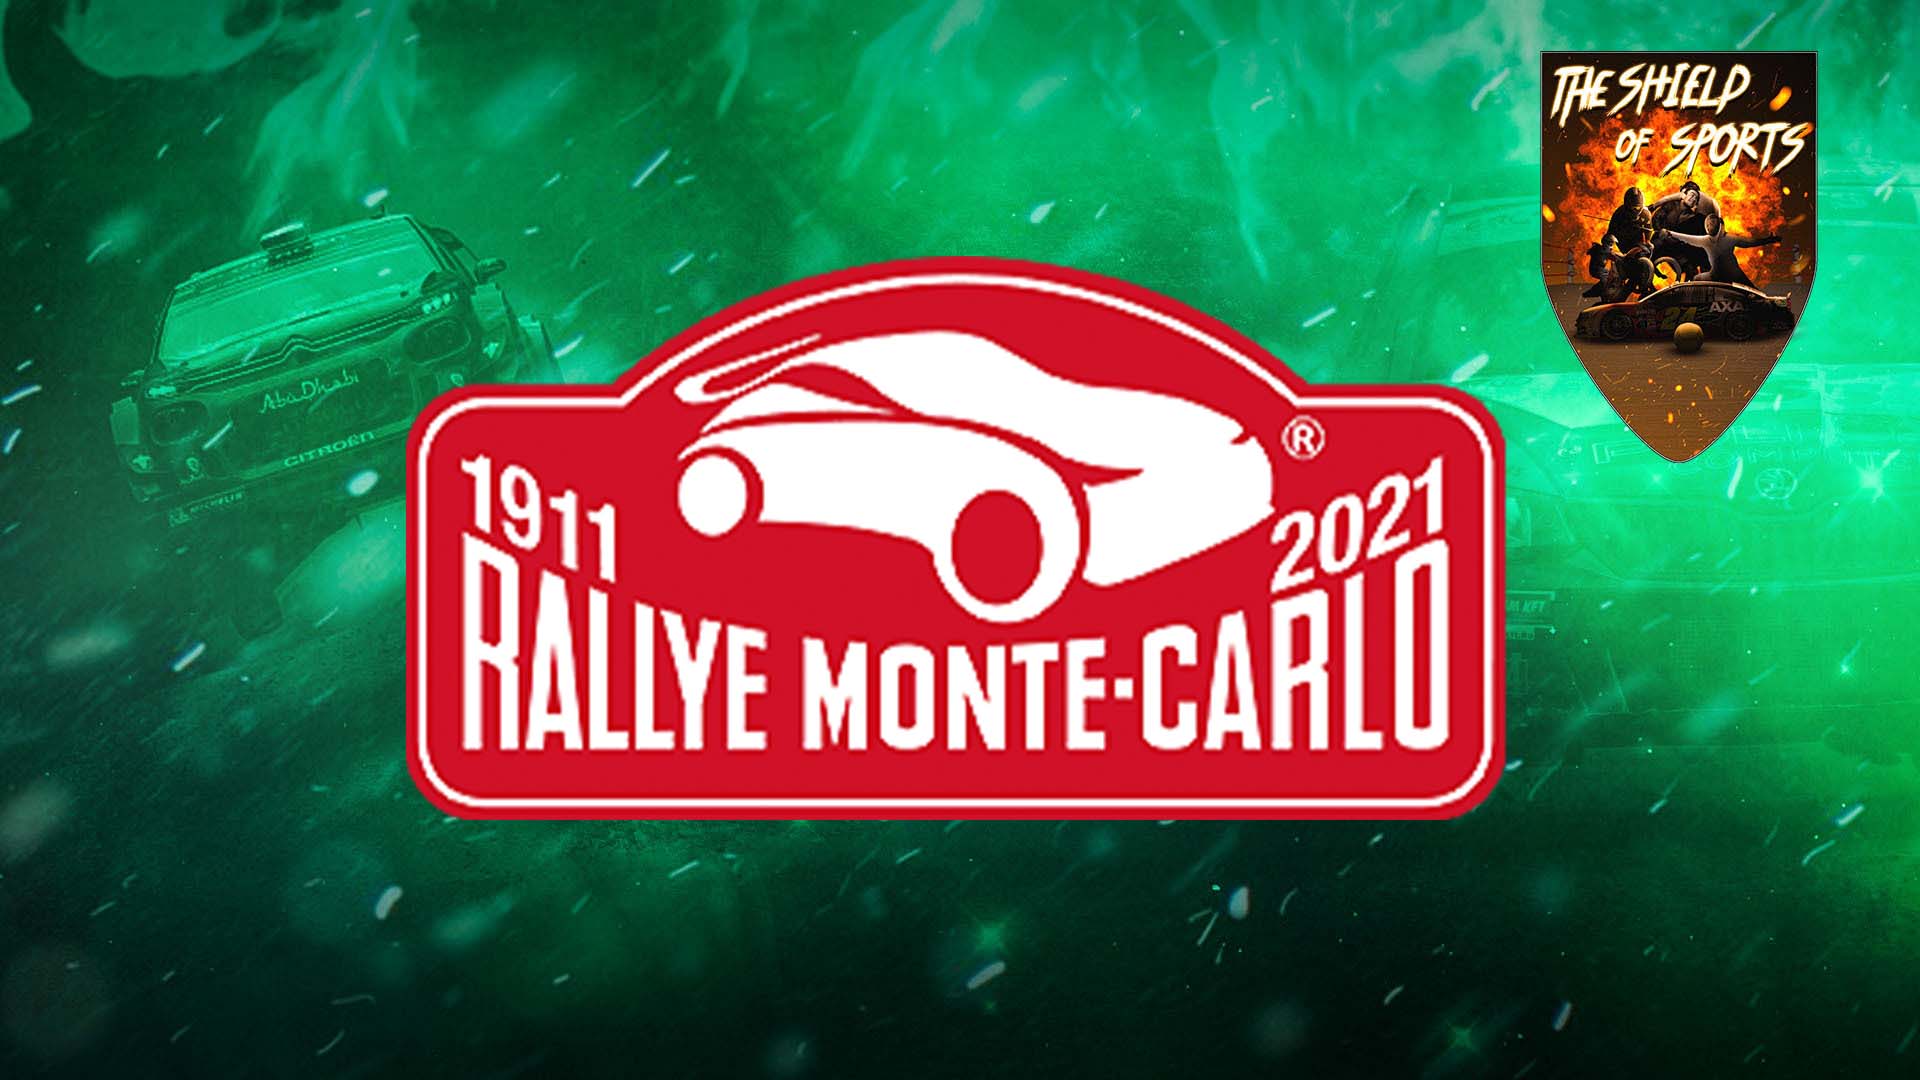 Rally Di Montecarlo: Streaming, Orari, Come Vederlo in Italia